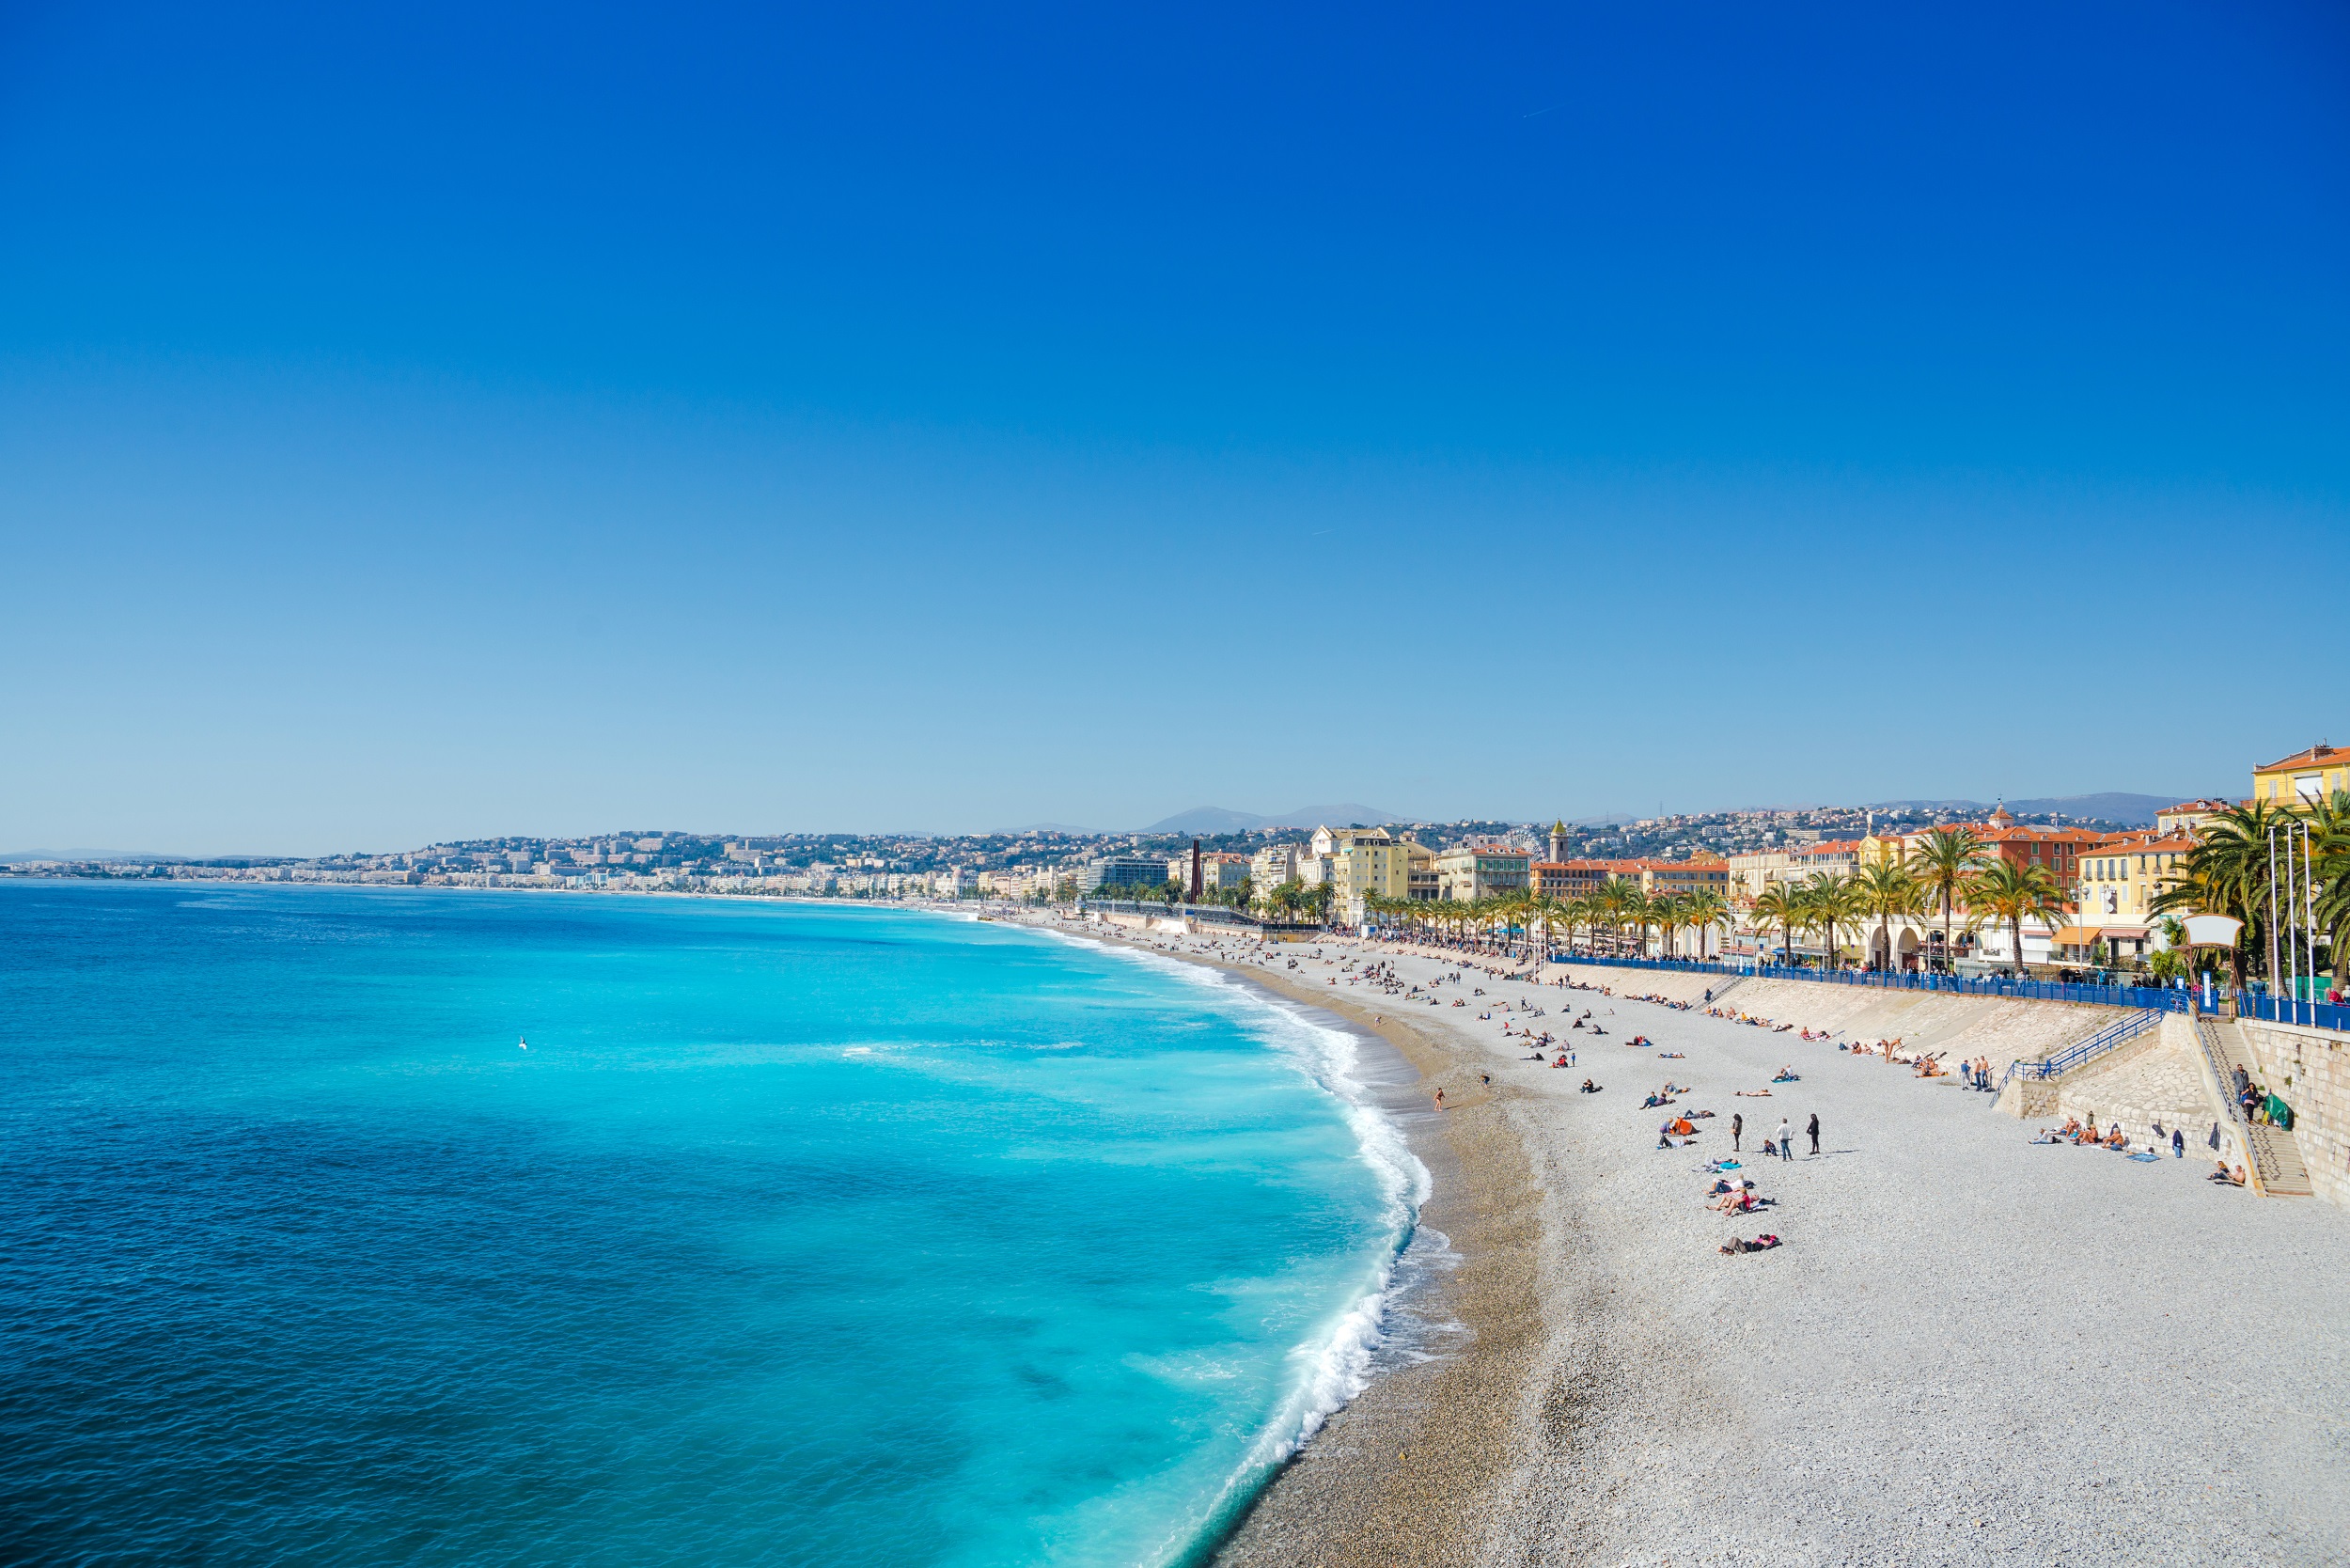 La température de l'eau est de 27 °C à Nice ces jours-ci, soit 4 °C au-dessus de la normale en juillet. © Alexander Demyanenko, Adobe Stock